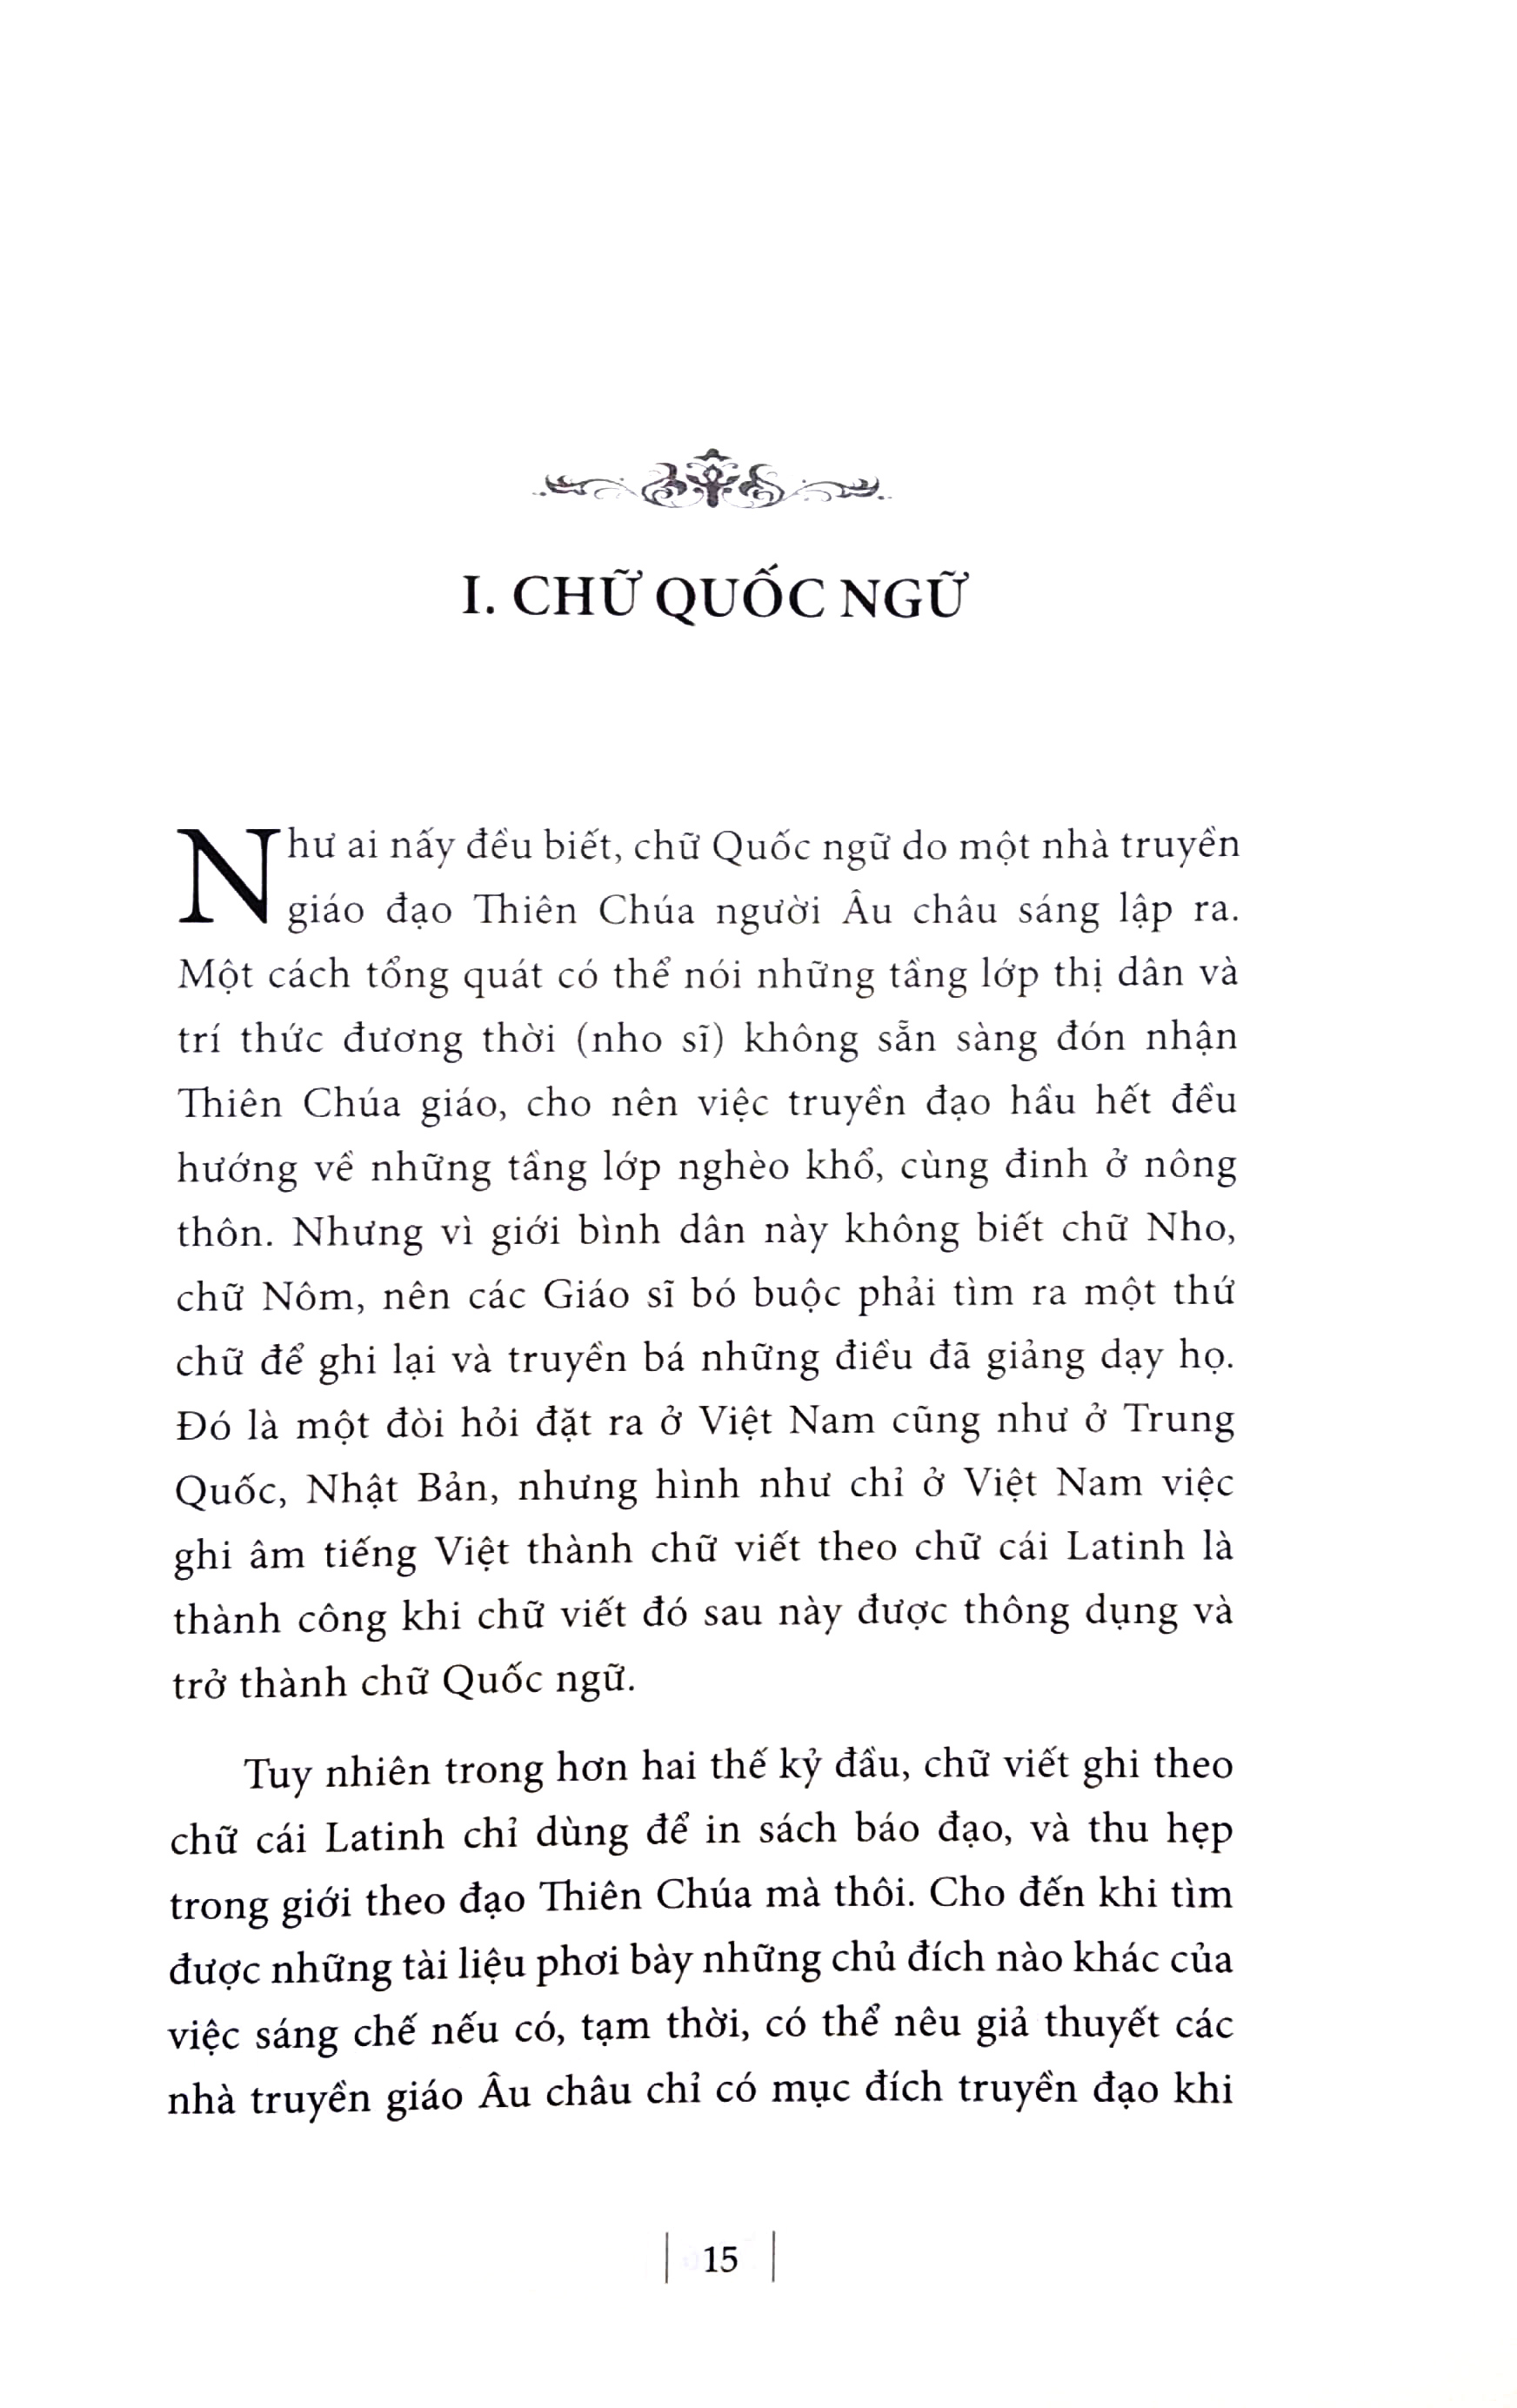 Chữ, Văn Quốc Ngữ - Thời Kì Bắc Thuộc Theo Bản In Năm 1974 PDF